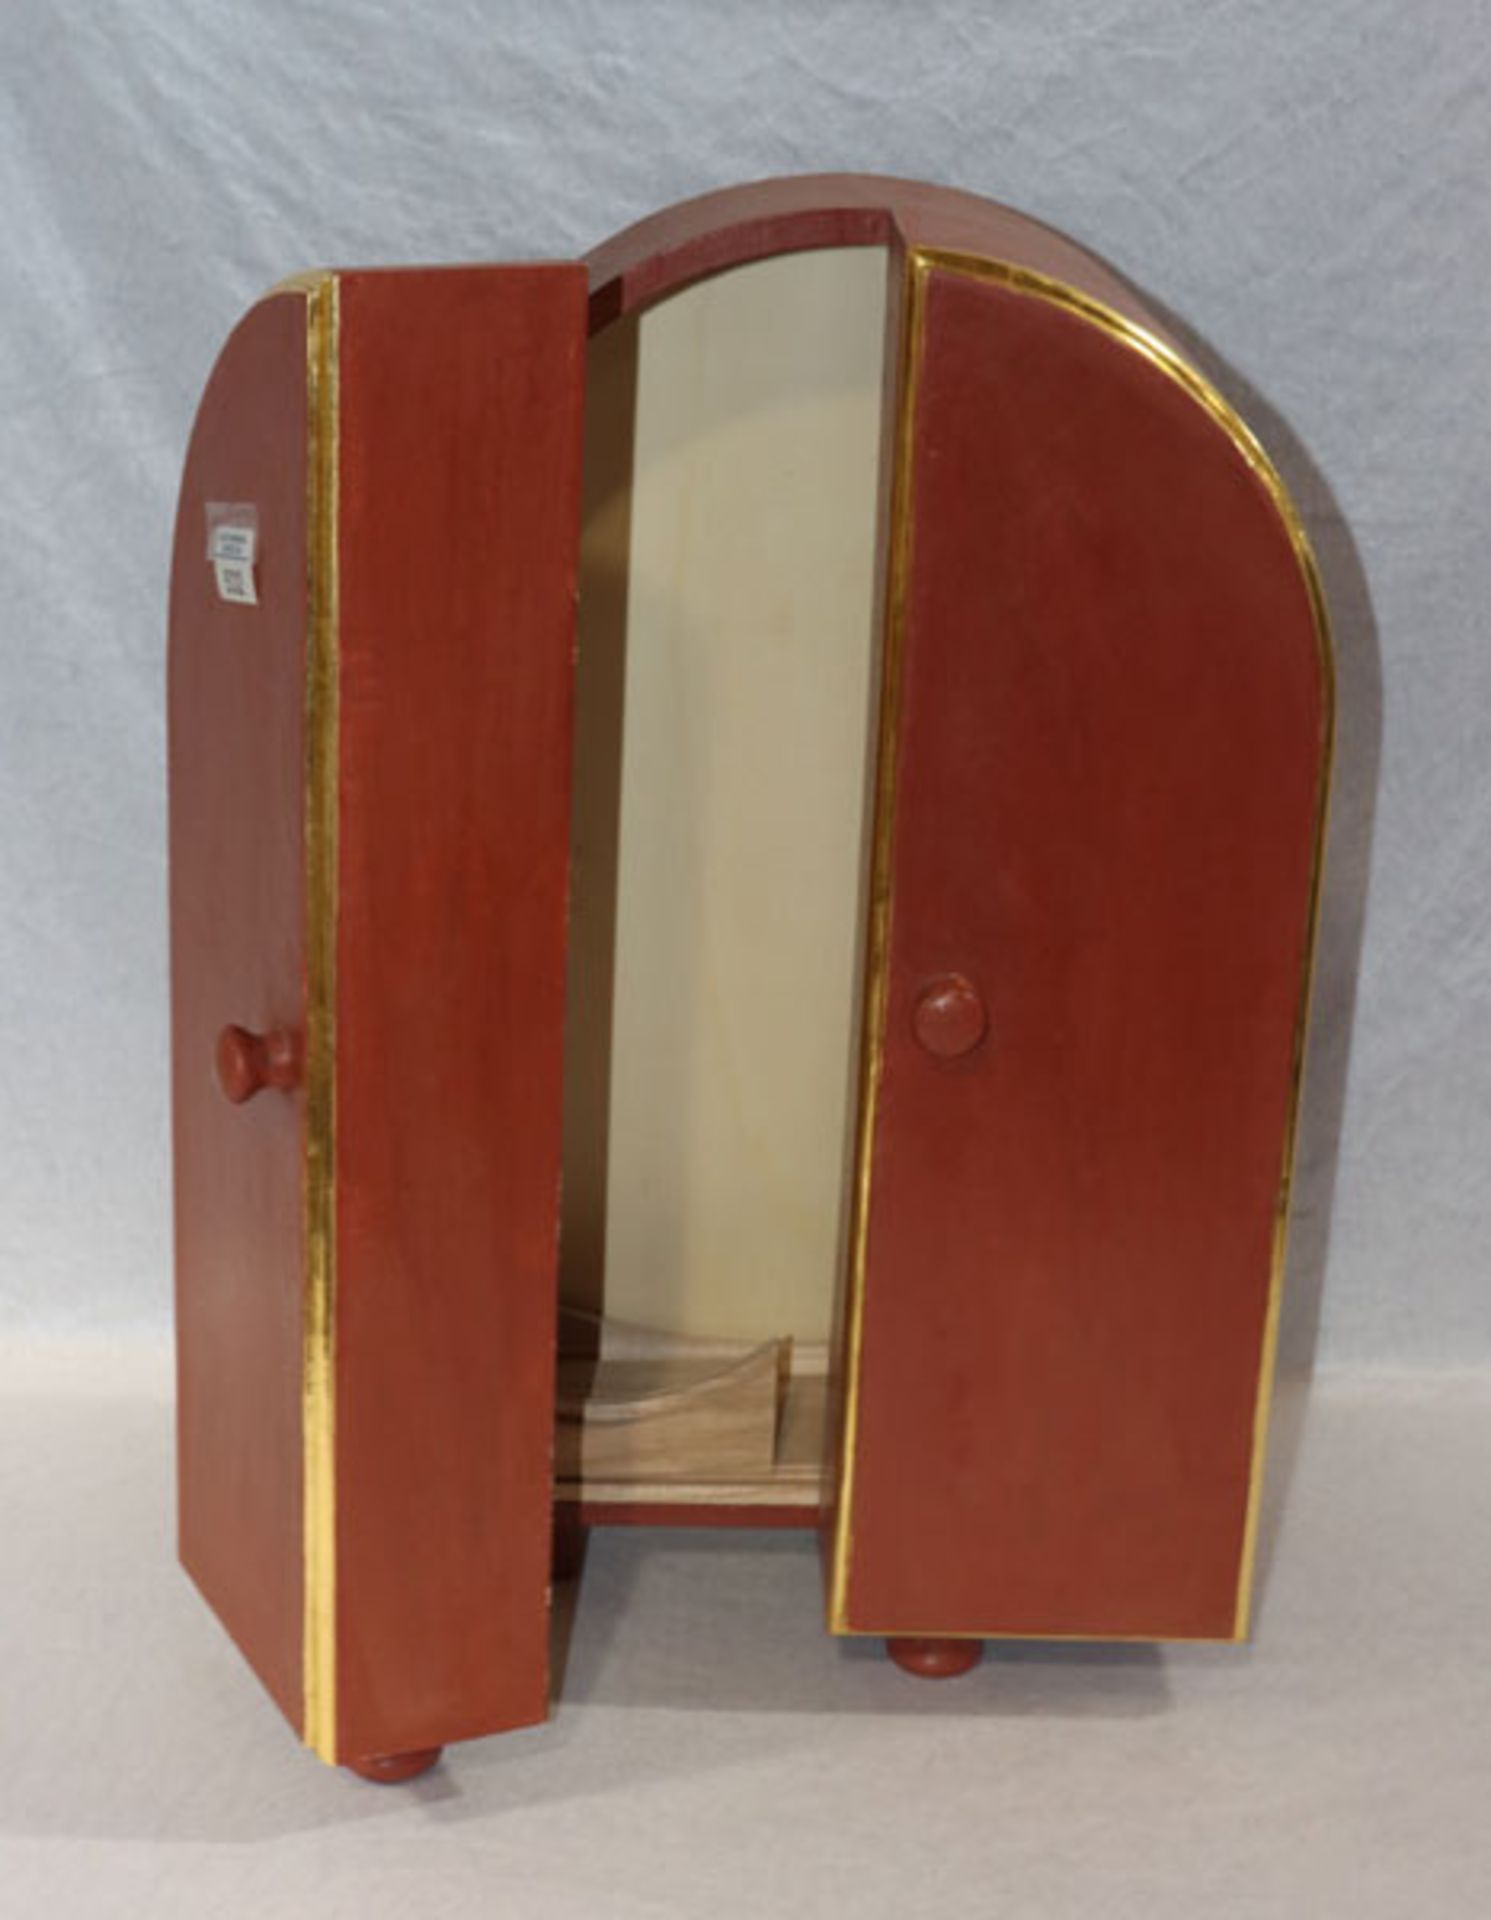 Holzkasten mit Doppeltür, wohl für Hausaltar, weinrot/gold bemalt, H 55 cm, B 33 cm, T 20 cm,